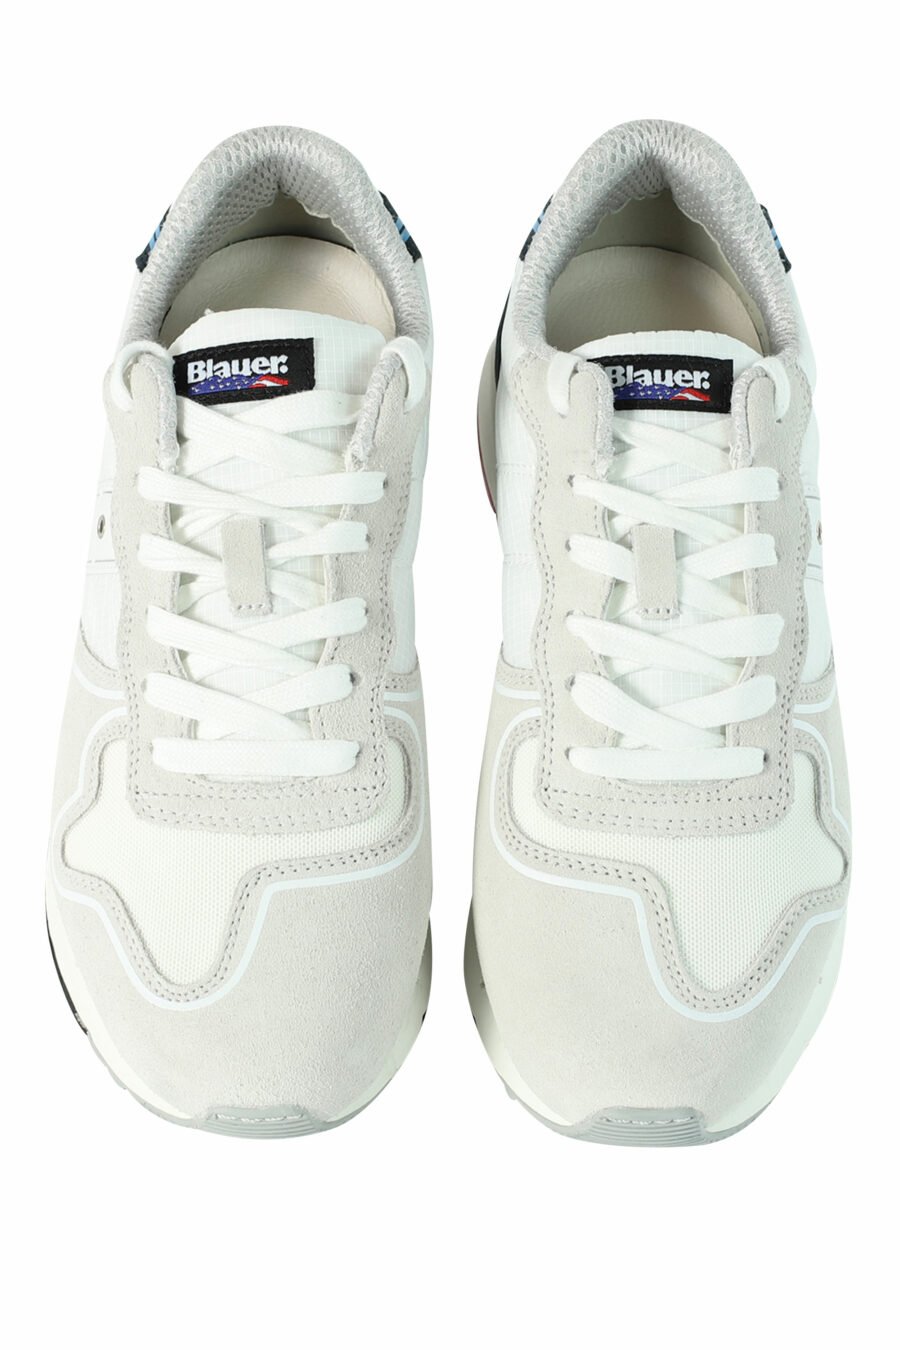 Zapatillas "QUARTZ" blancas con azul y detalles rojos - 8058156499522 5